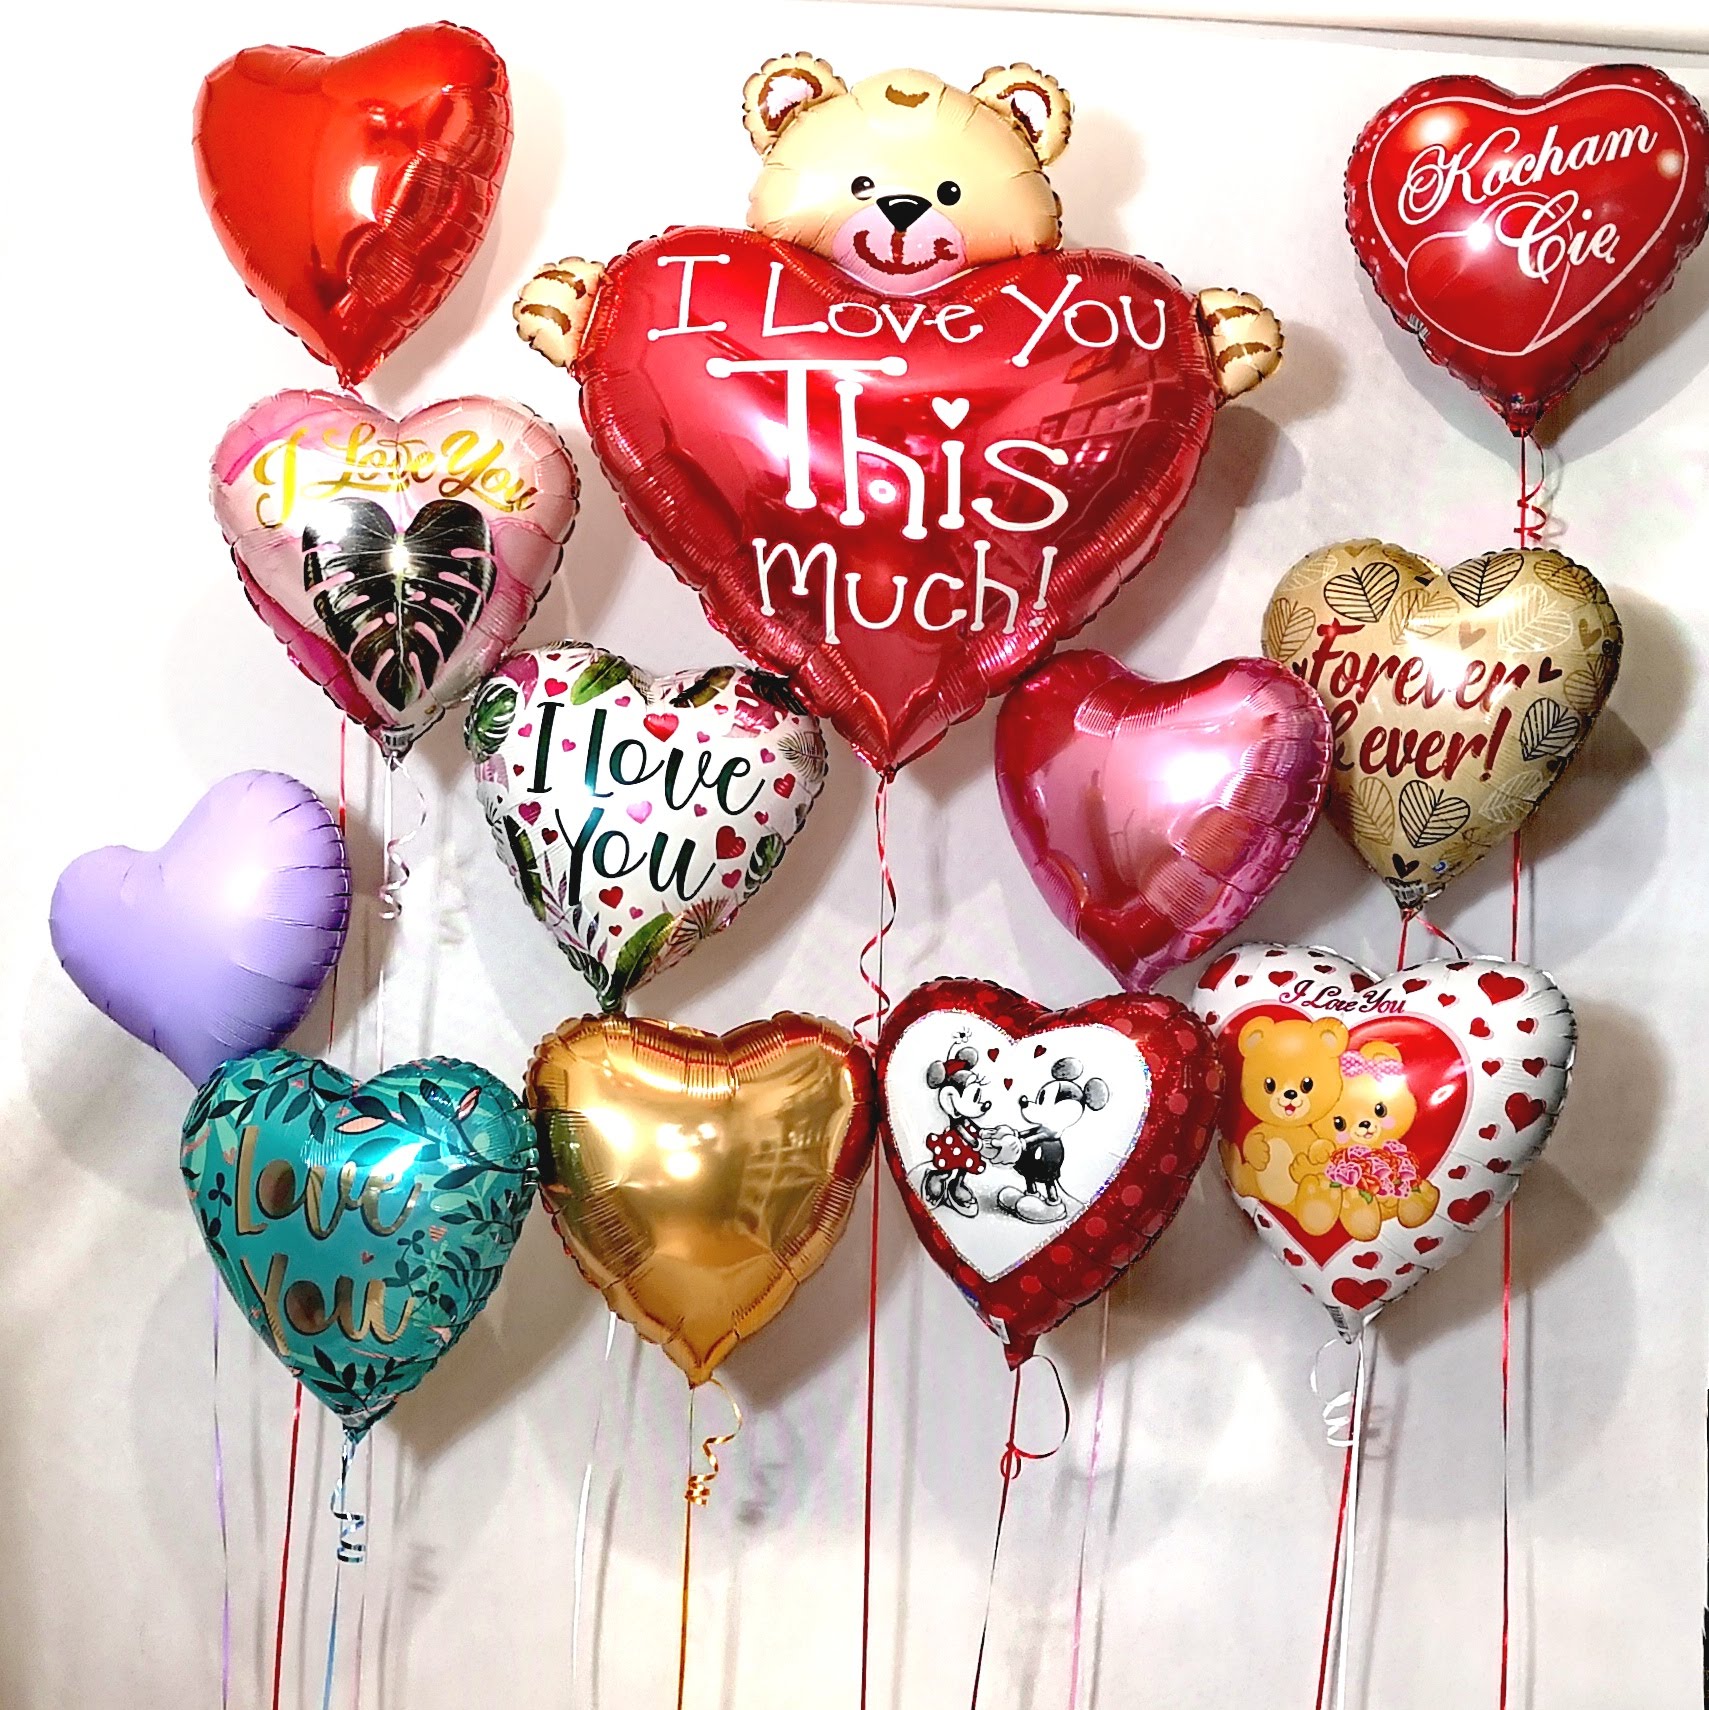 Balony w kształcie serca - Super baloniki serduszka na Walentynki